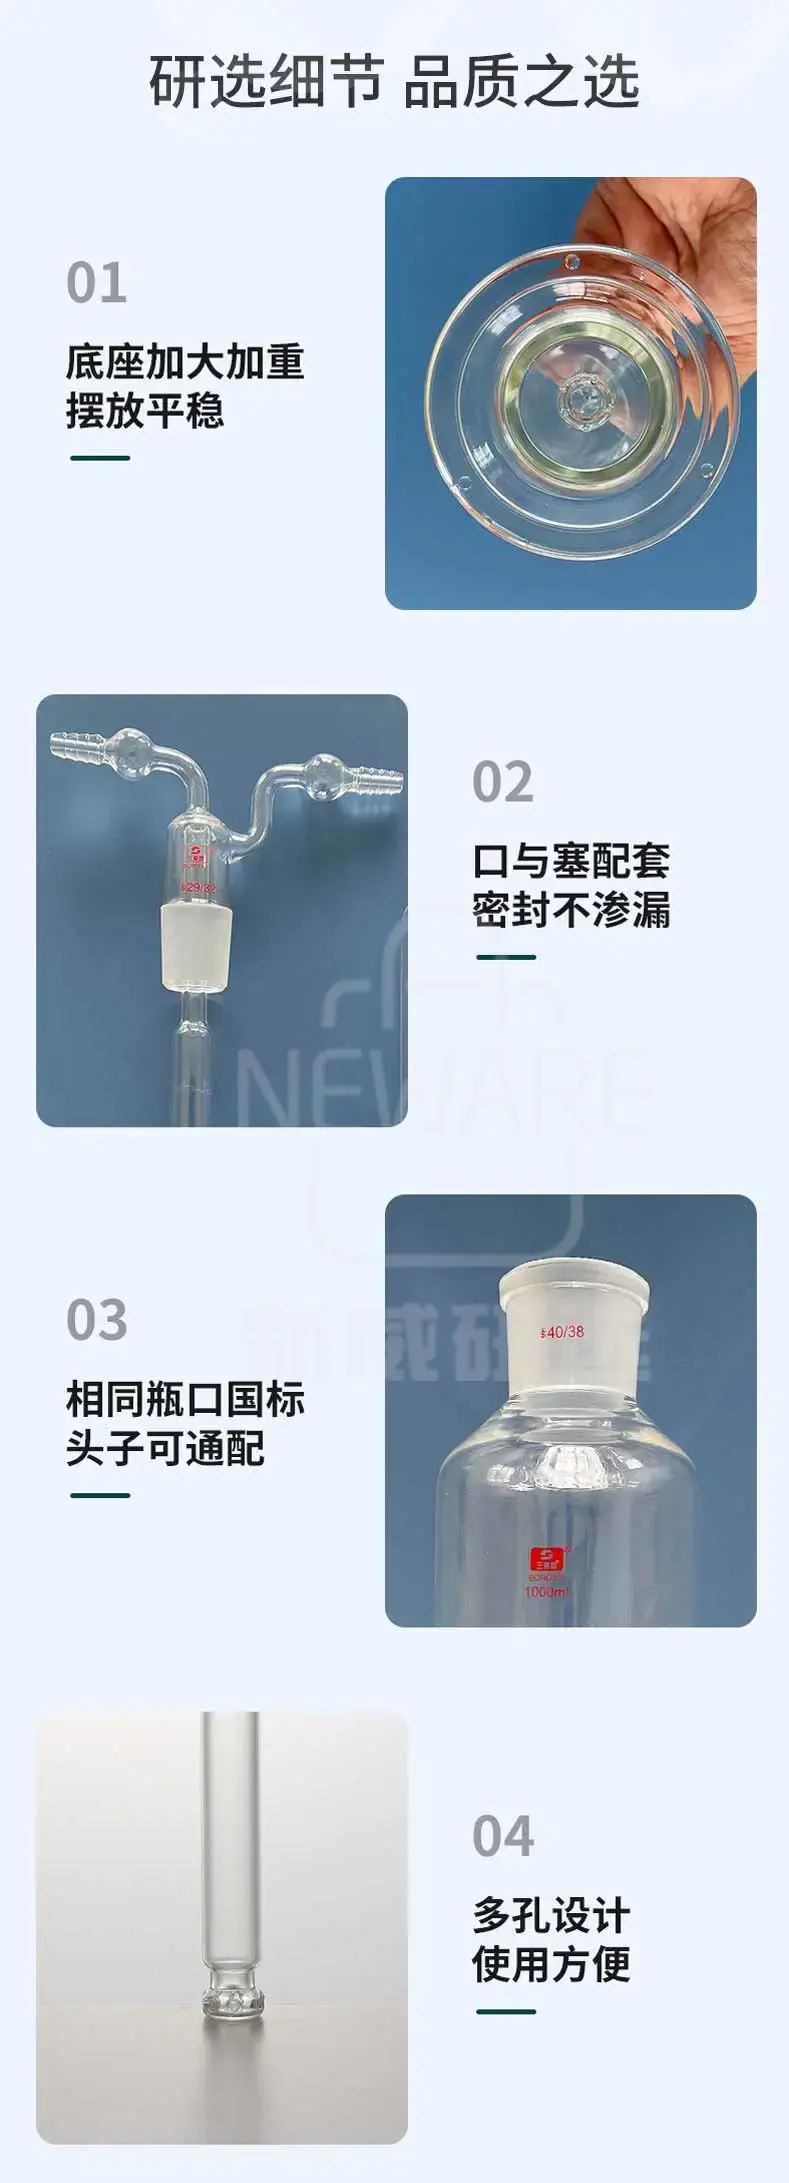 气体洗瓶商品介绍3